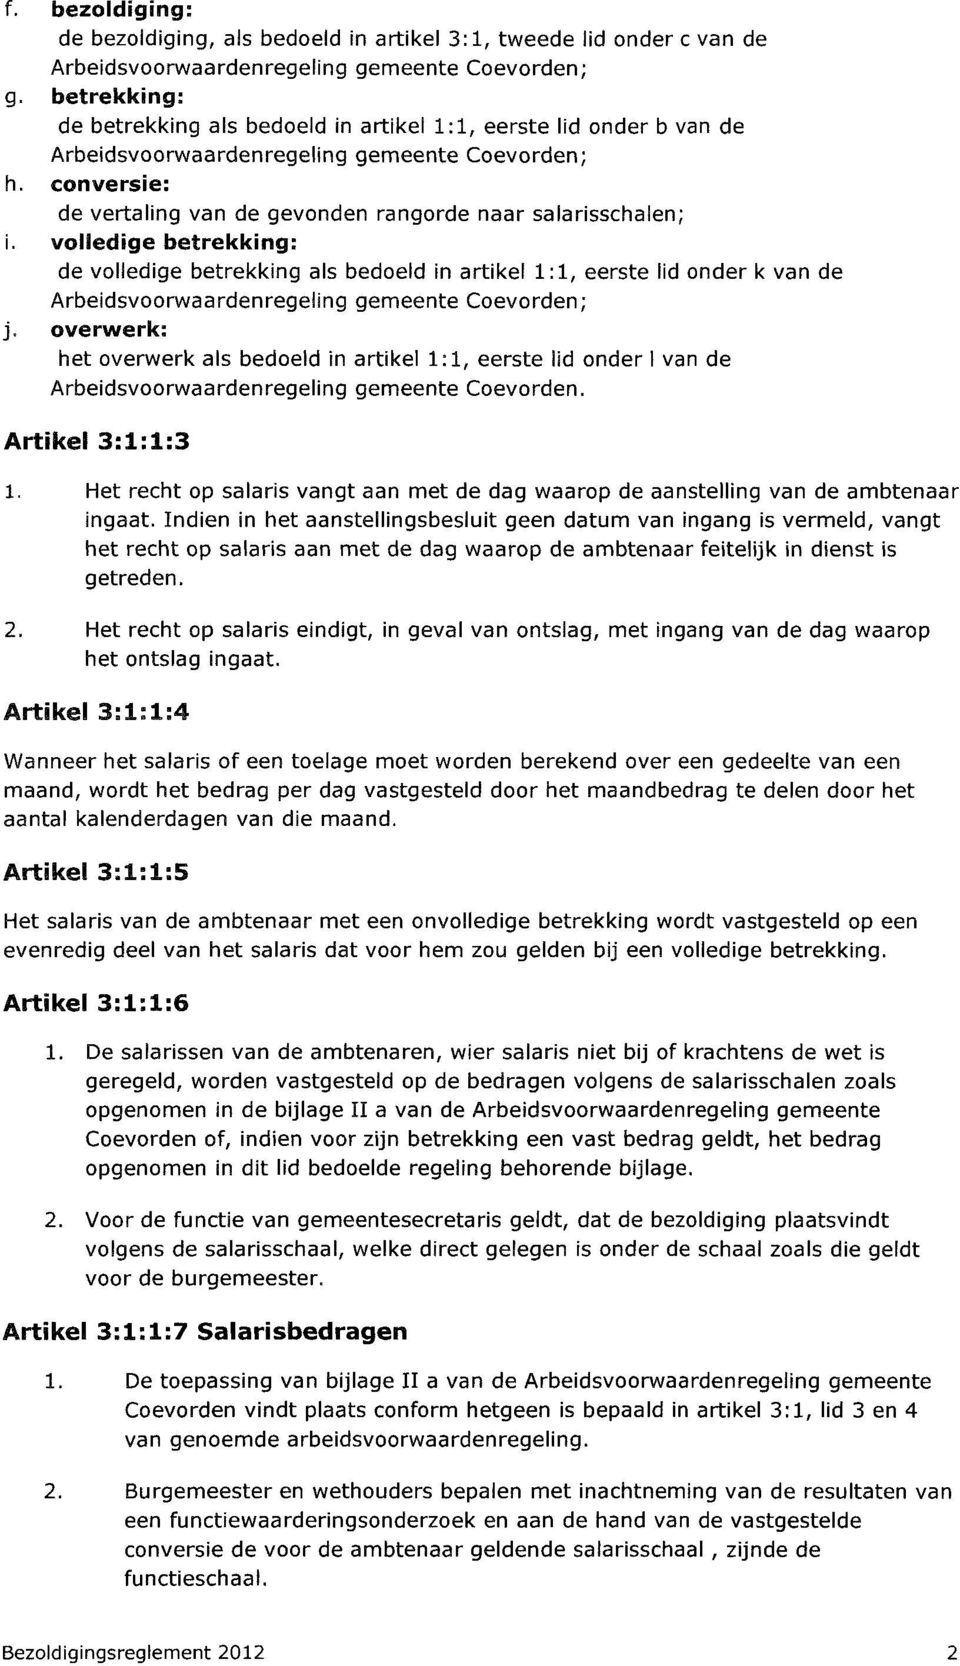 werinferfc het overwerk als bedoeld in artikel 1:1, eerste lid onder I van de Arbeidsvoorwaardenregeling gemeente Coevorden. Artikel 3:1:1:3 1.